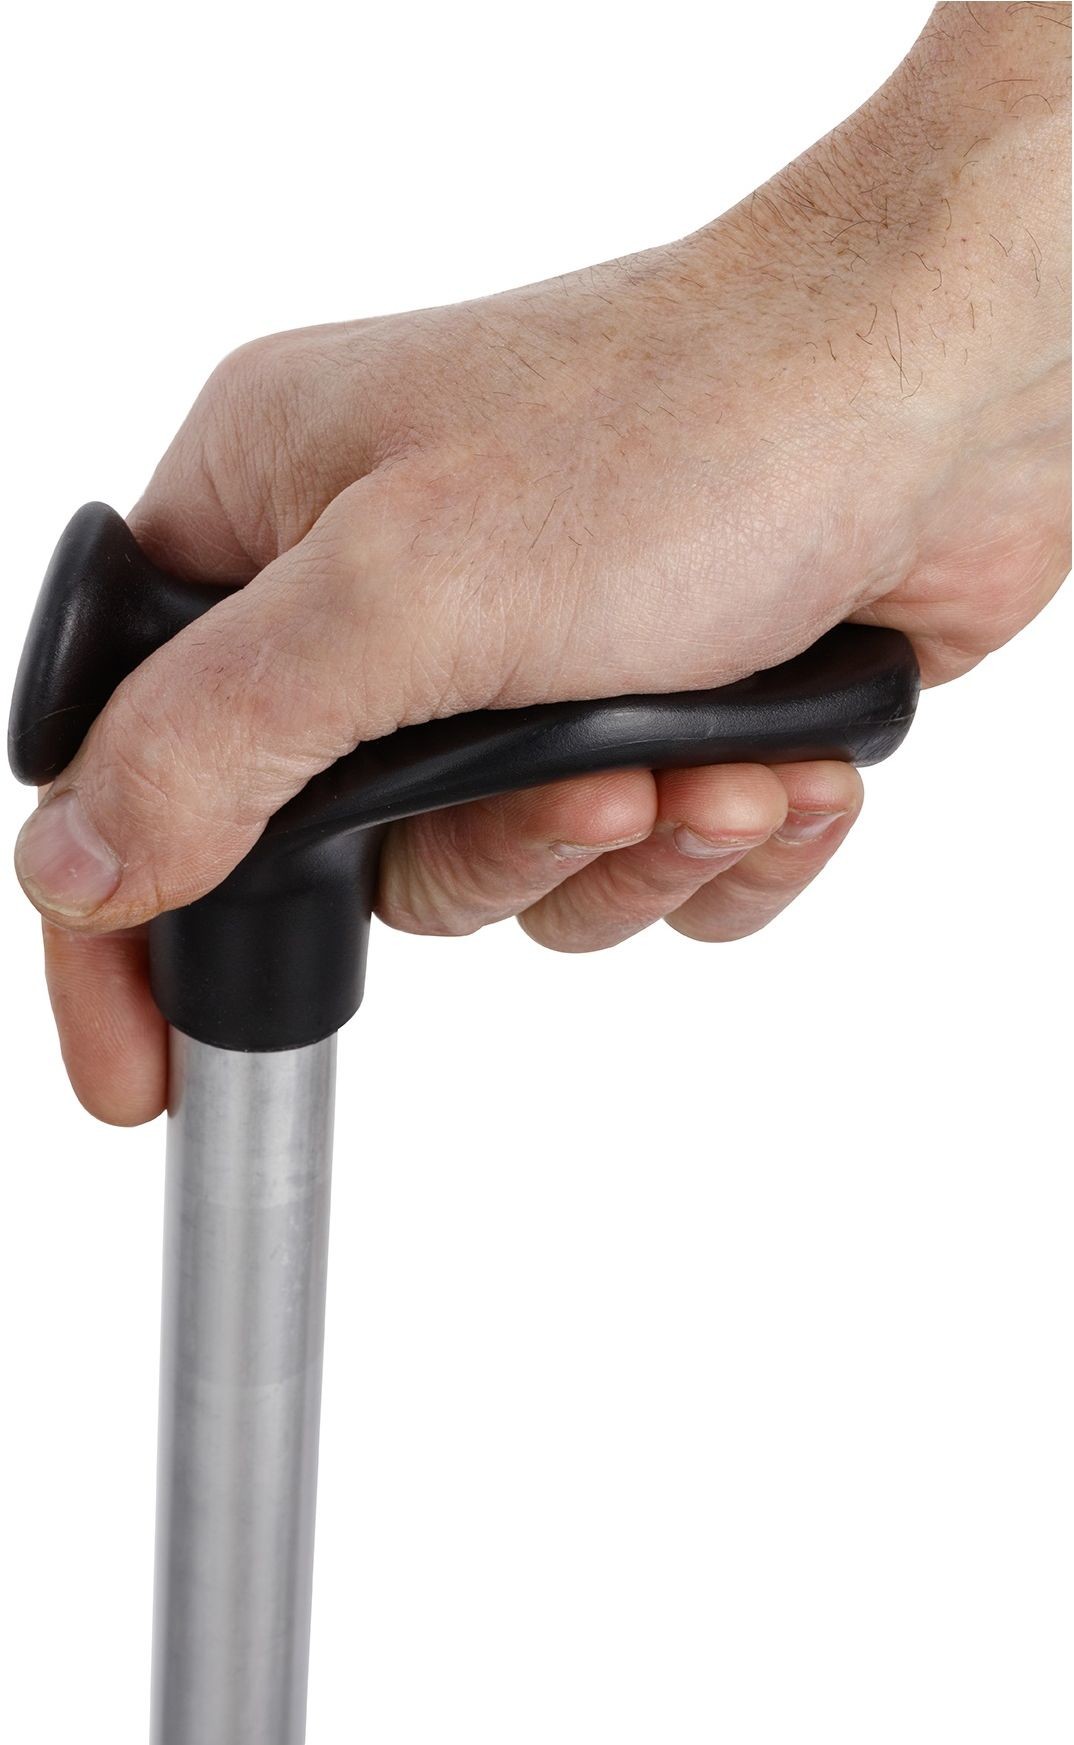 HERDEGEN Laska aluminiowa z anatomicznie profilowanym uchwytem na lewą lub prawą rękę - większy komfort użytkowania, równomierny nacisk na dłoń